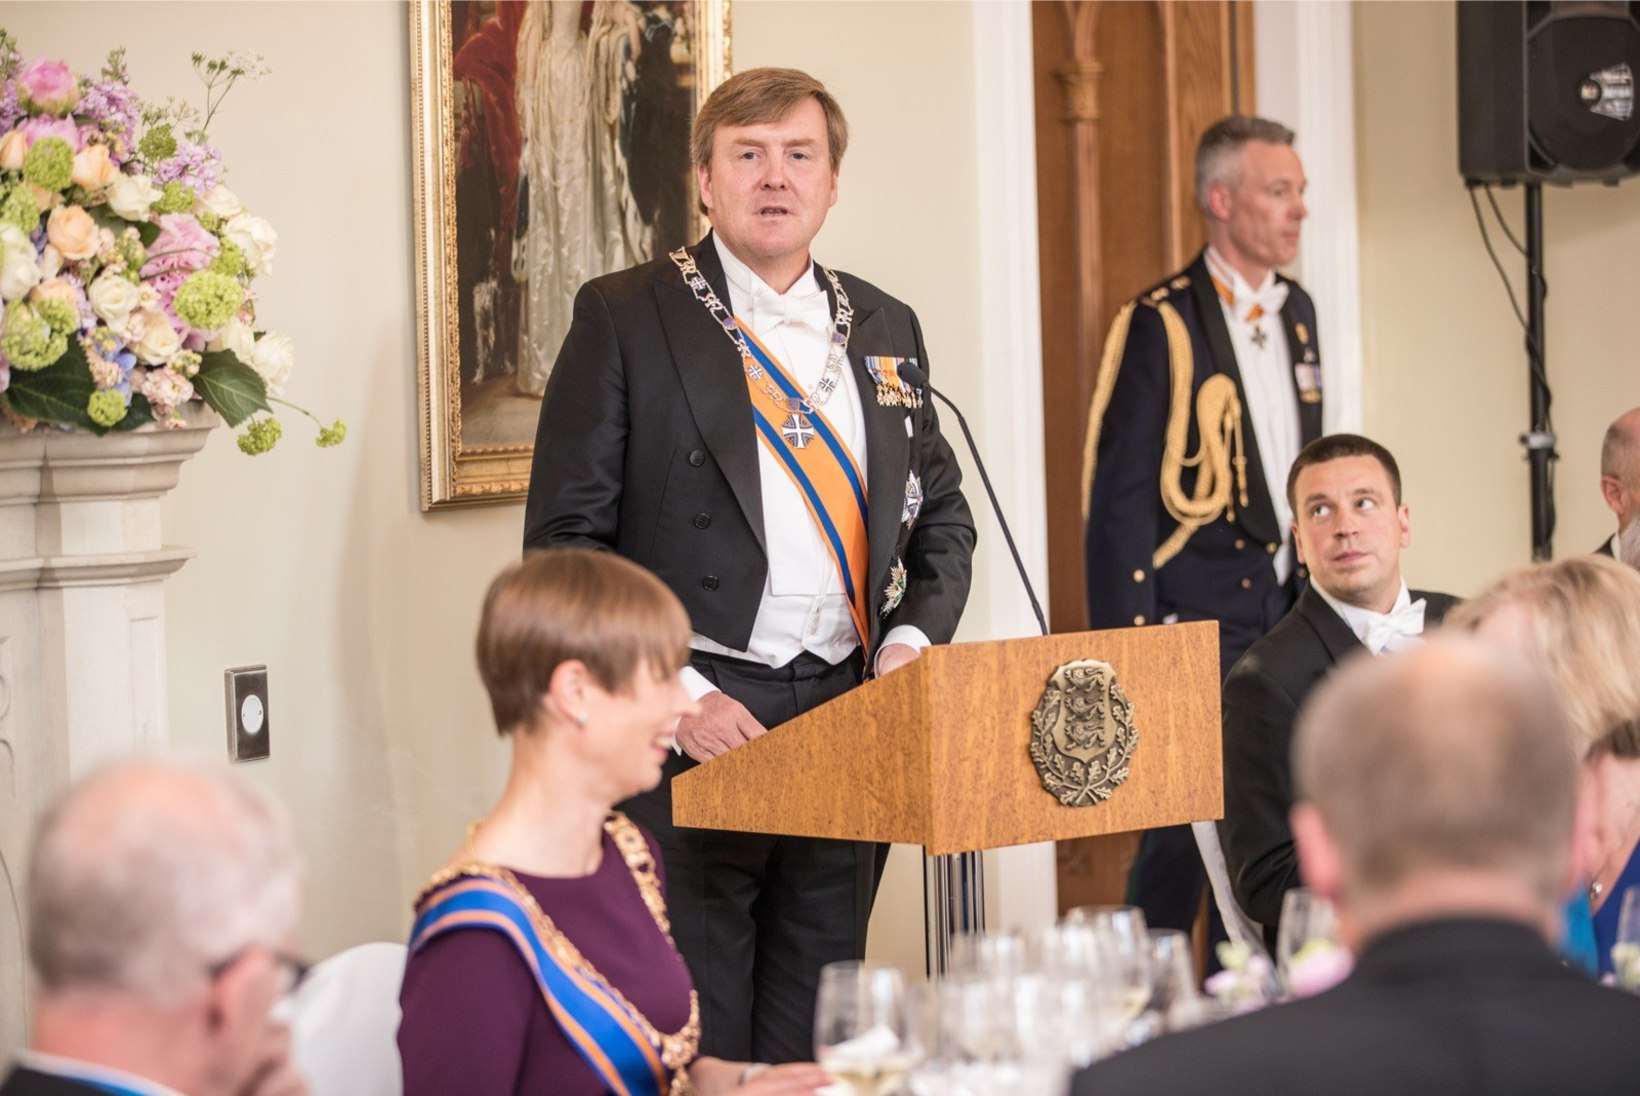 GALERII | Presidendipaar kutsus kuningas Willem-Alexanderi pidulikule õhtusöögile